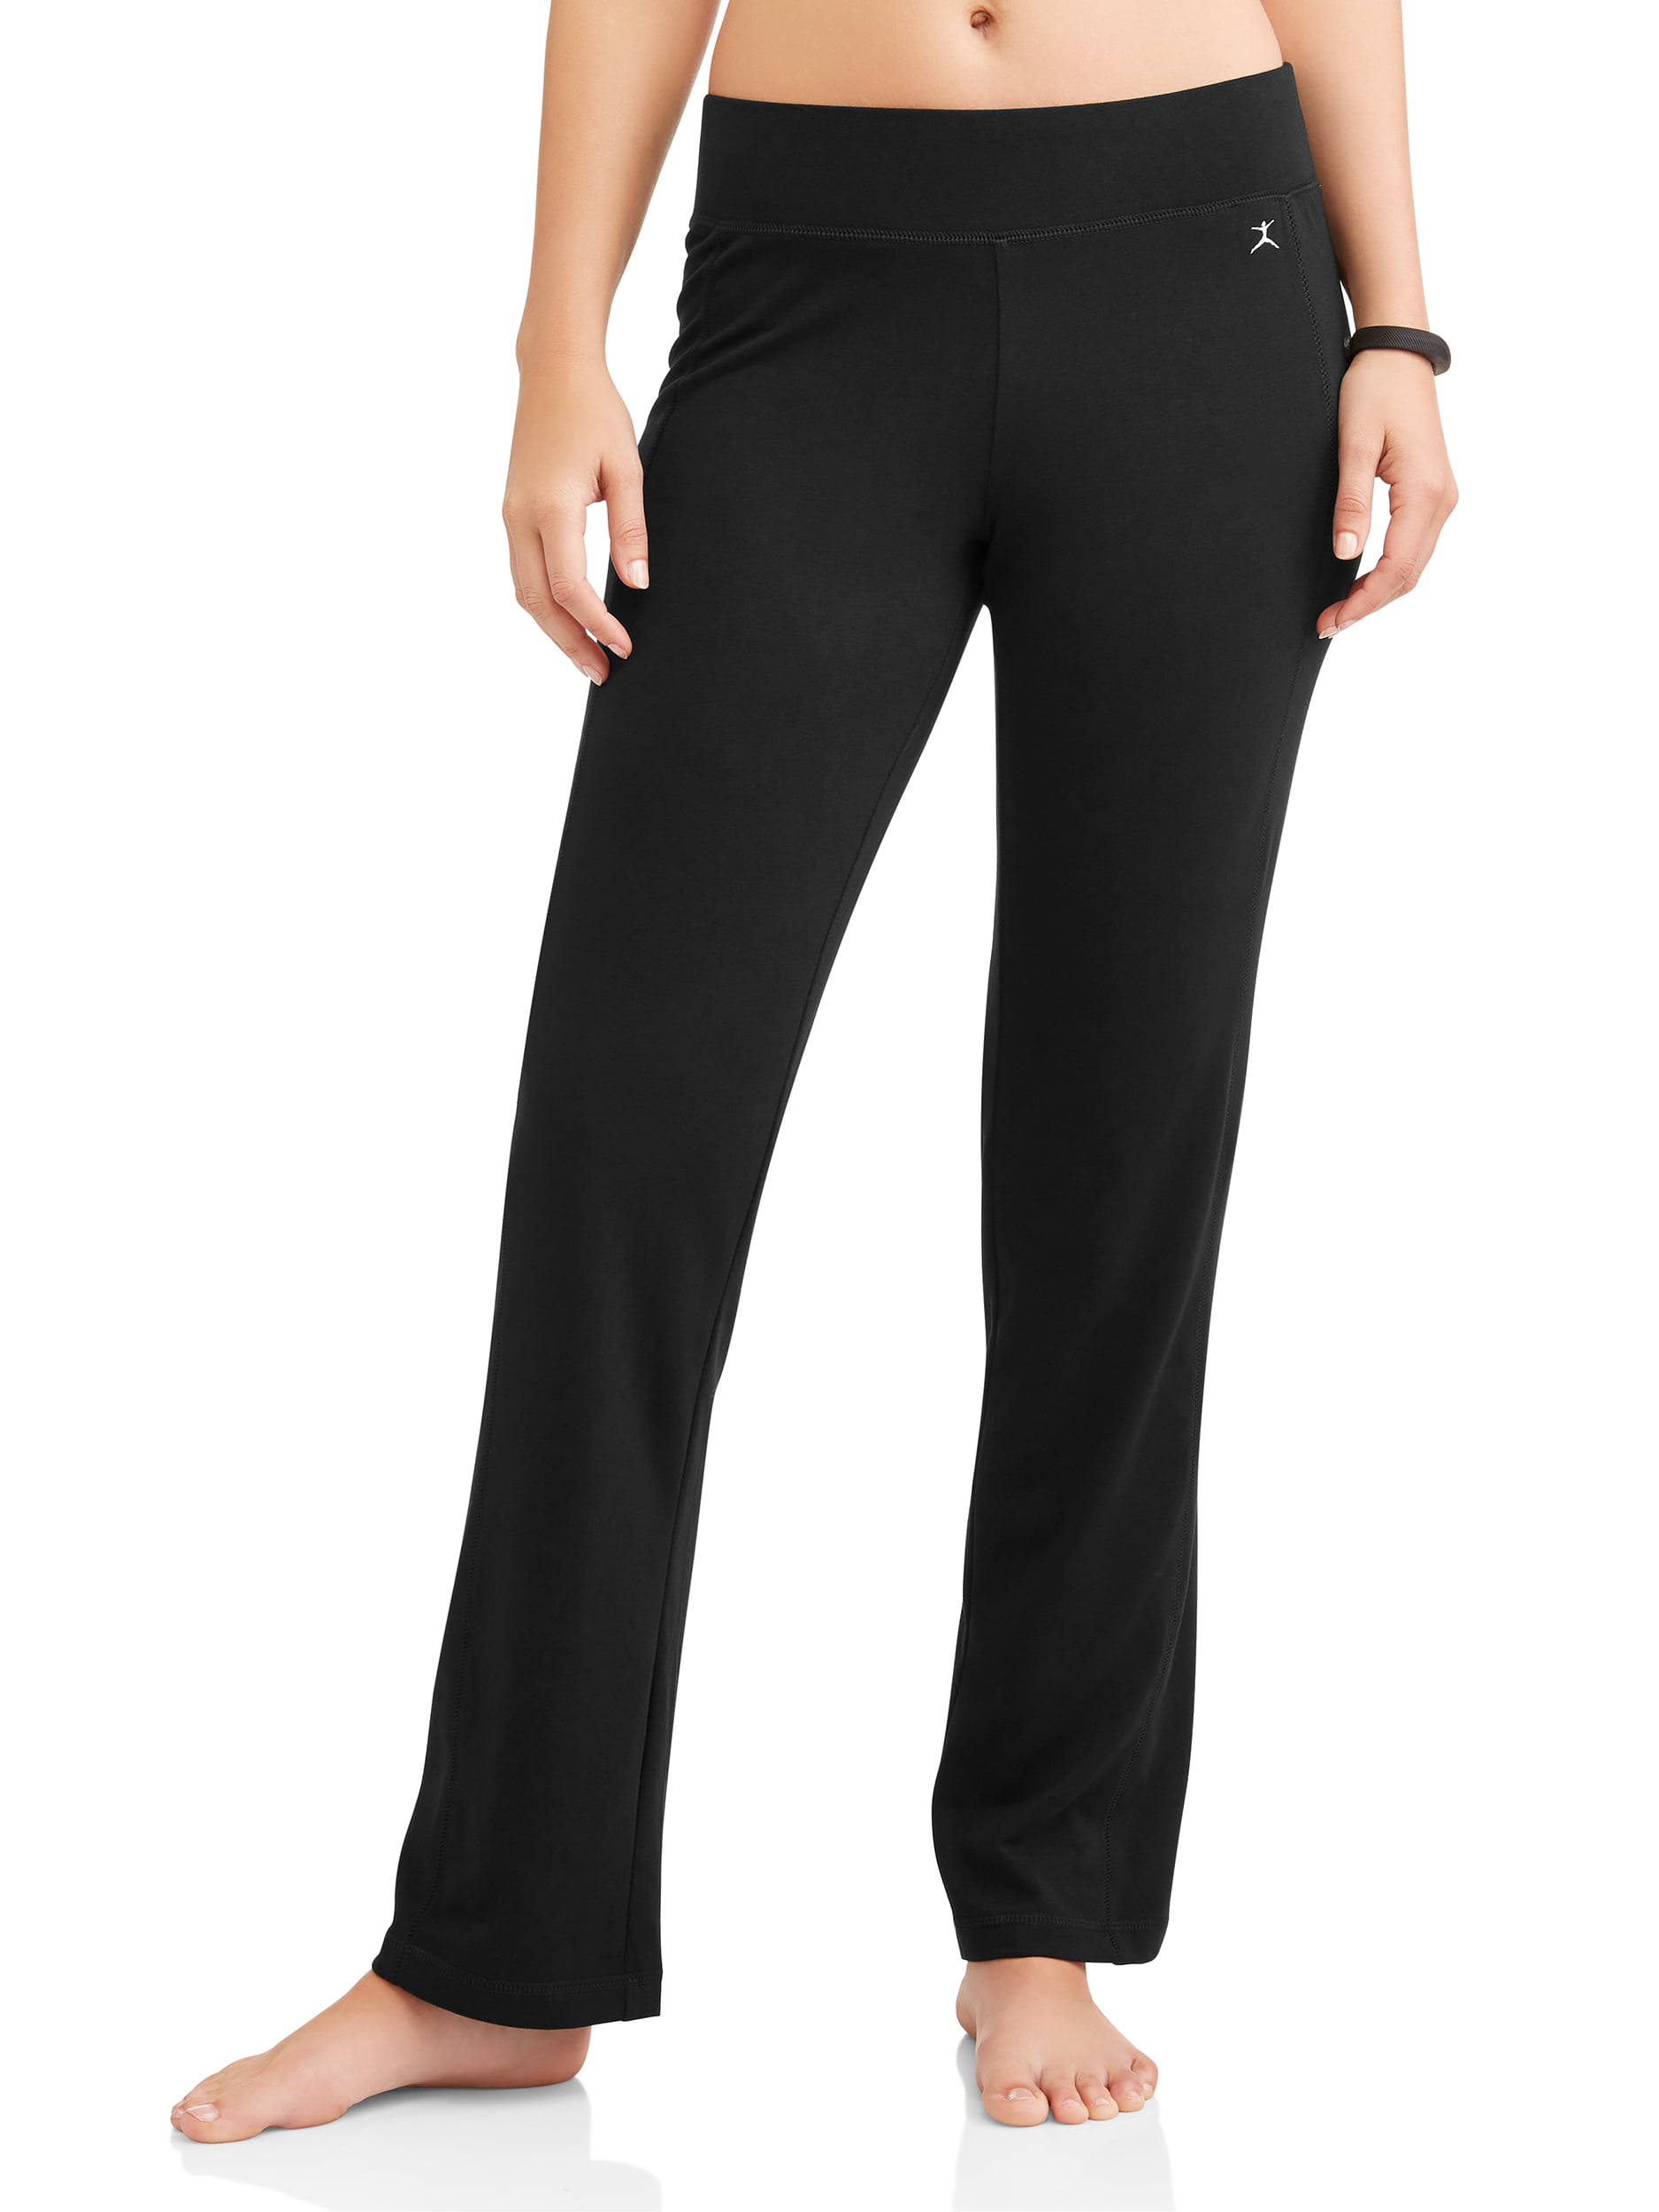 Danskin Women's Athleisure Sleek Fit Yoga Pants Size S --P2-- | eBay